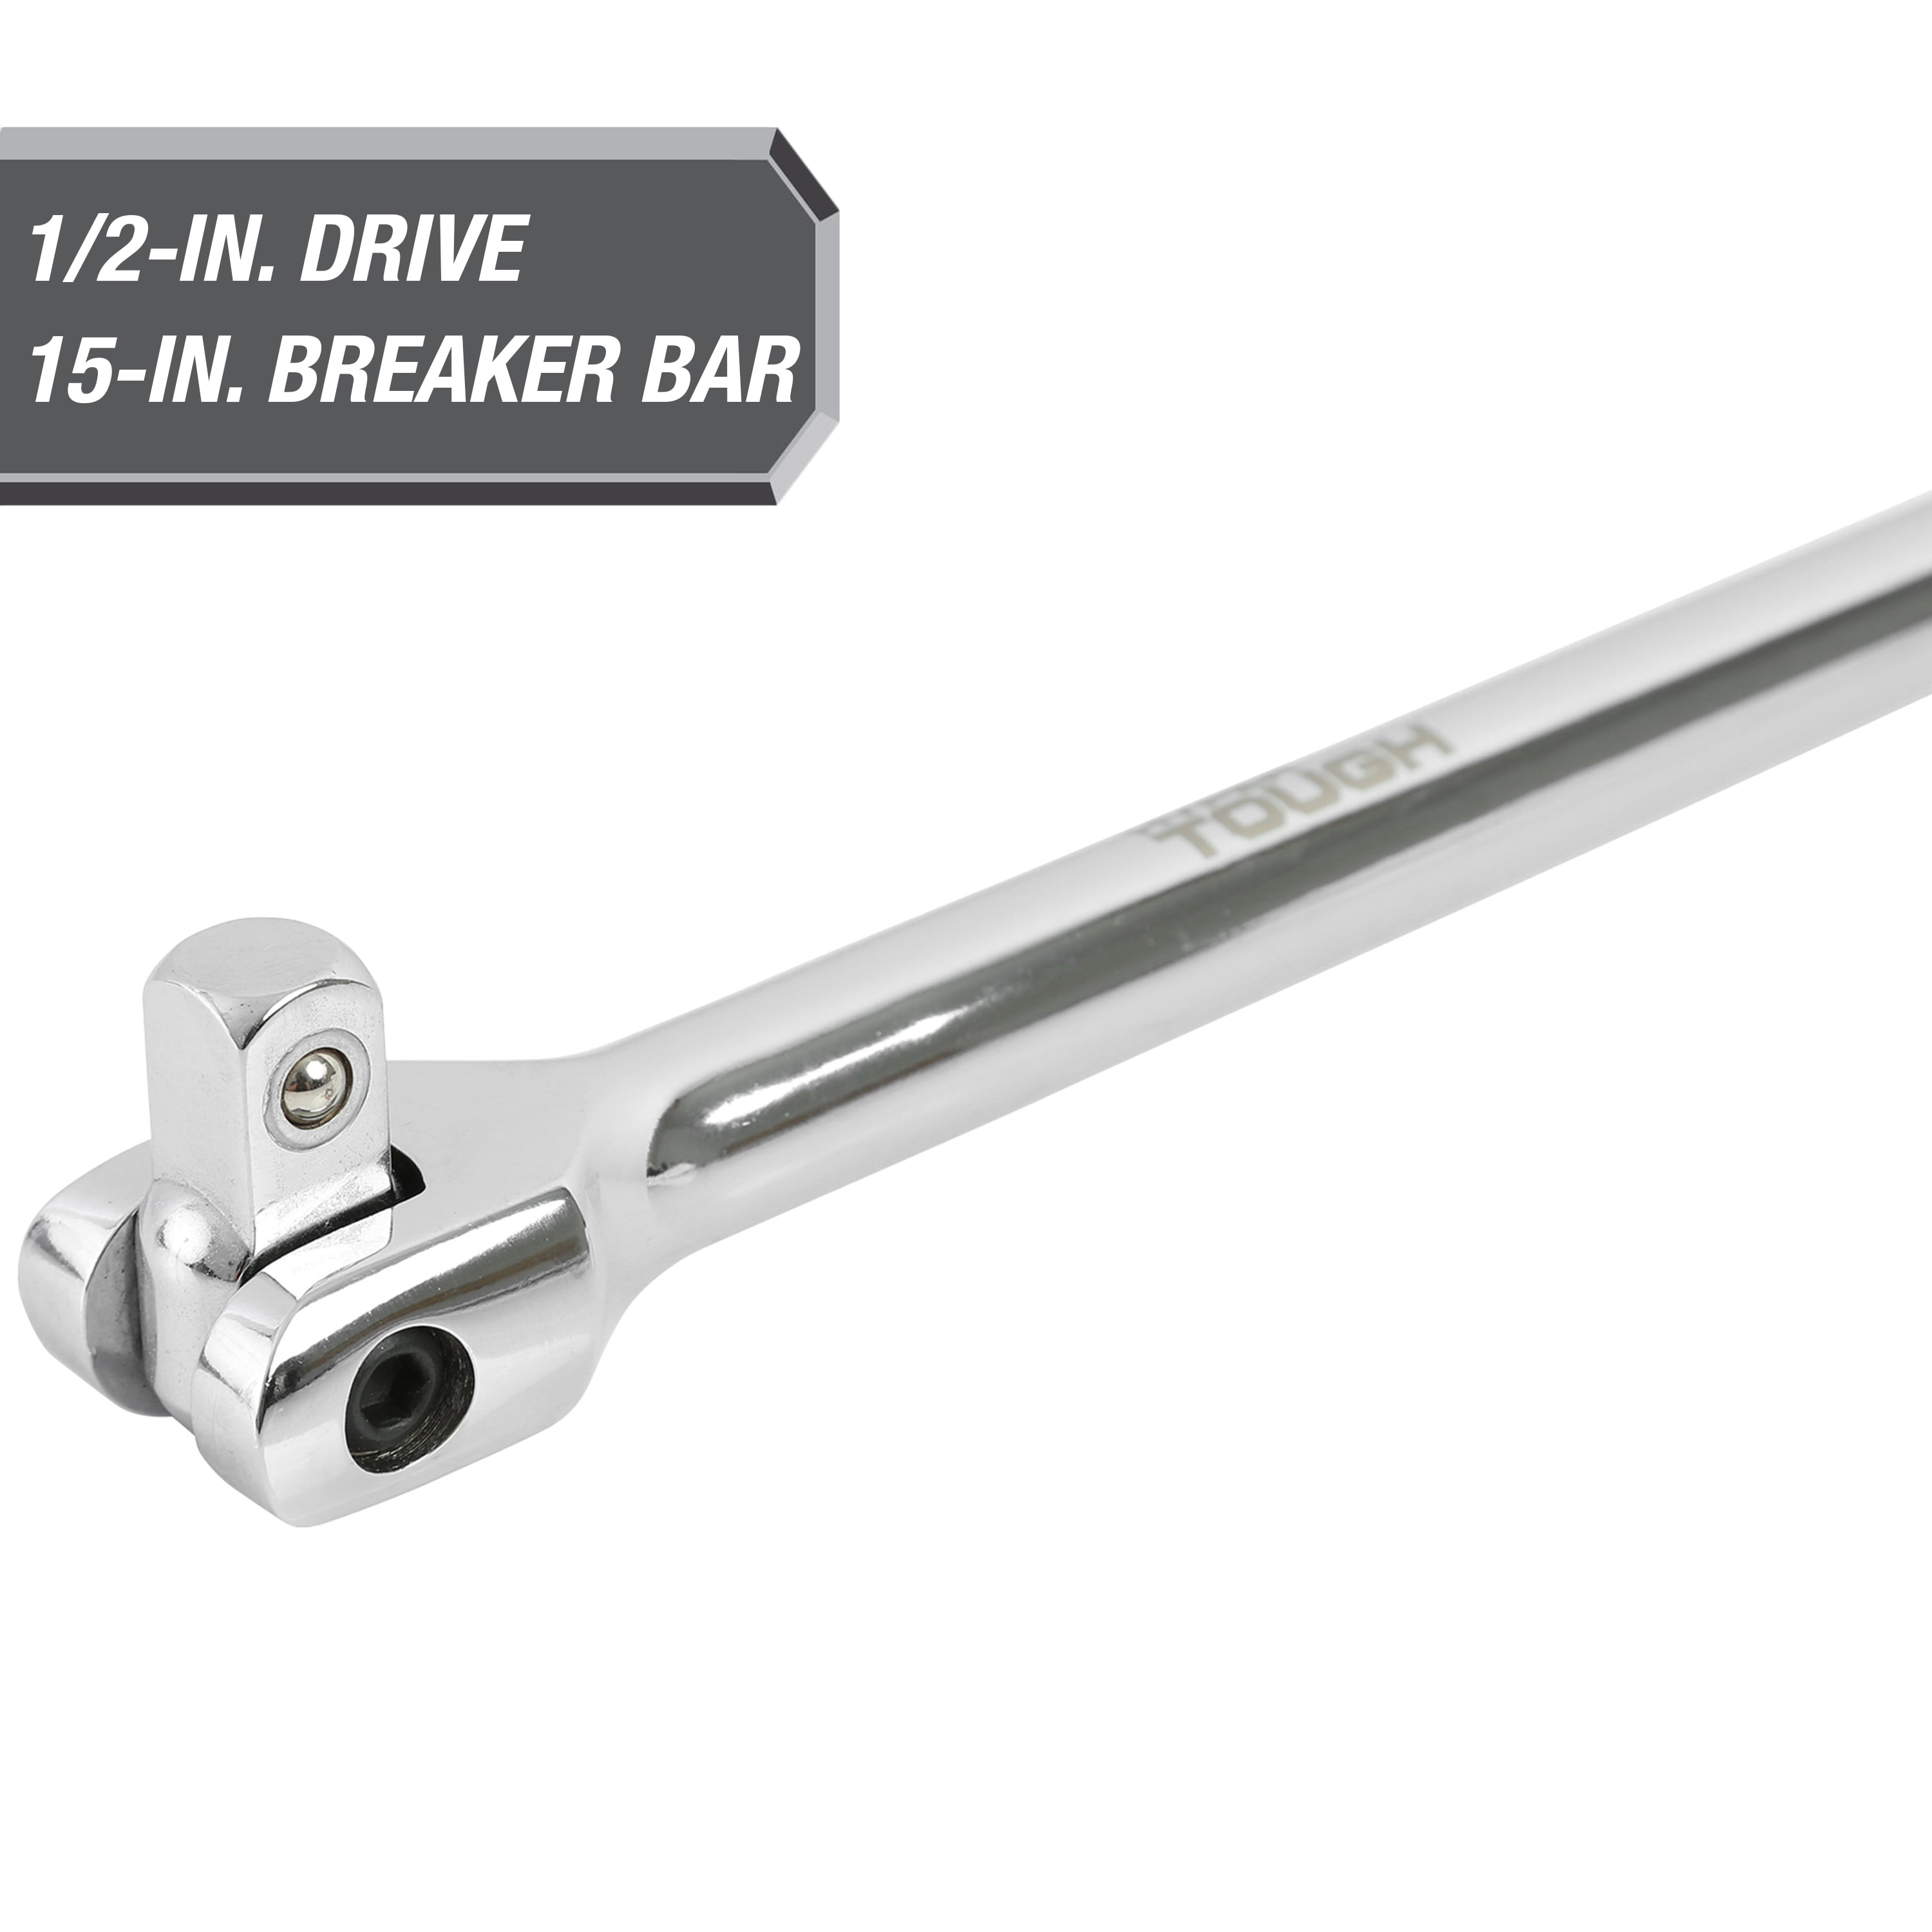 GoodYear Flexi Head Knuckle Power Breaker Bar Wrench 1/2" Drive 600mm Long 